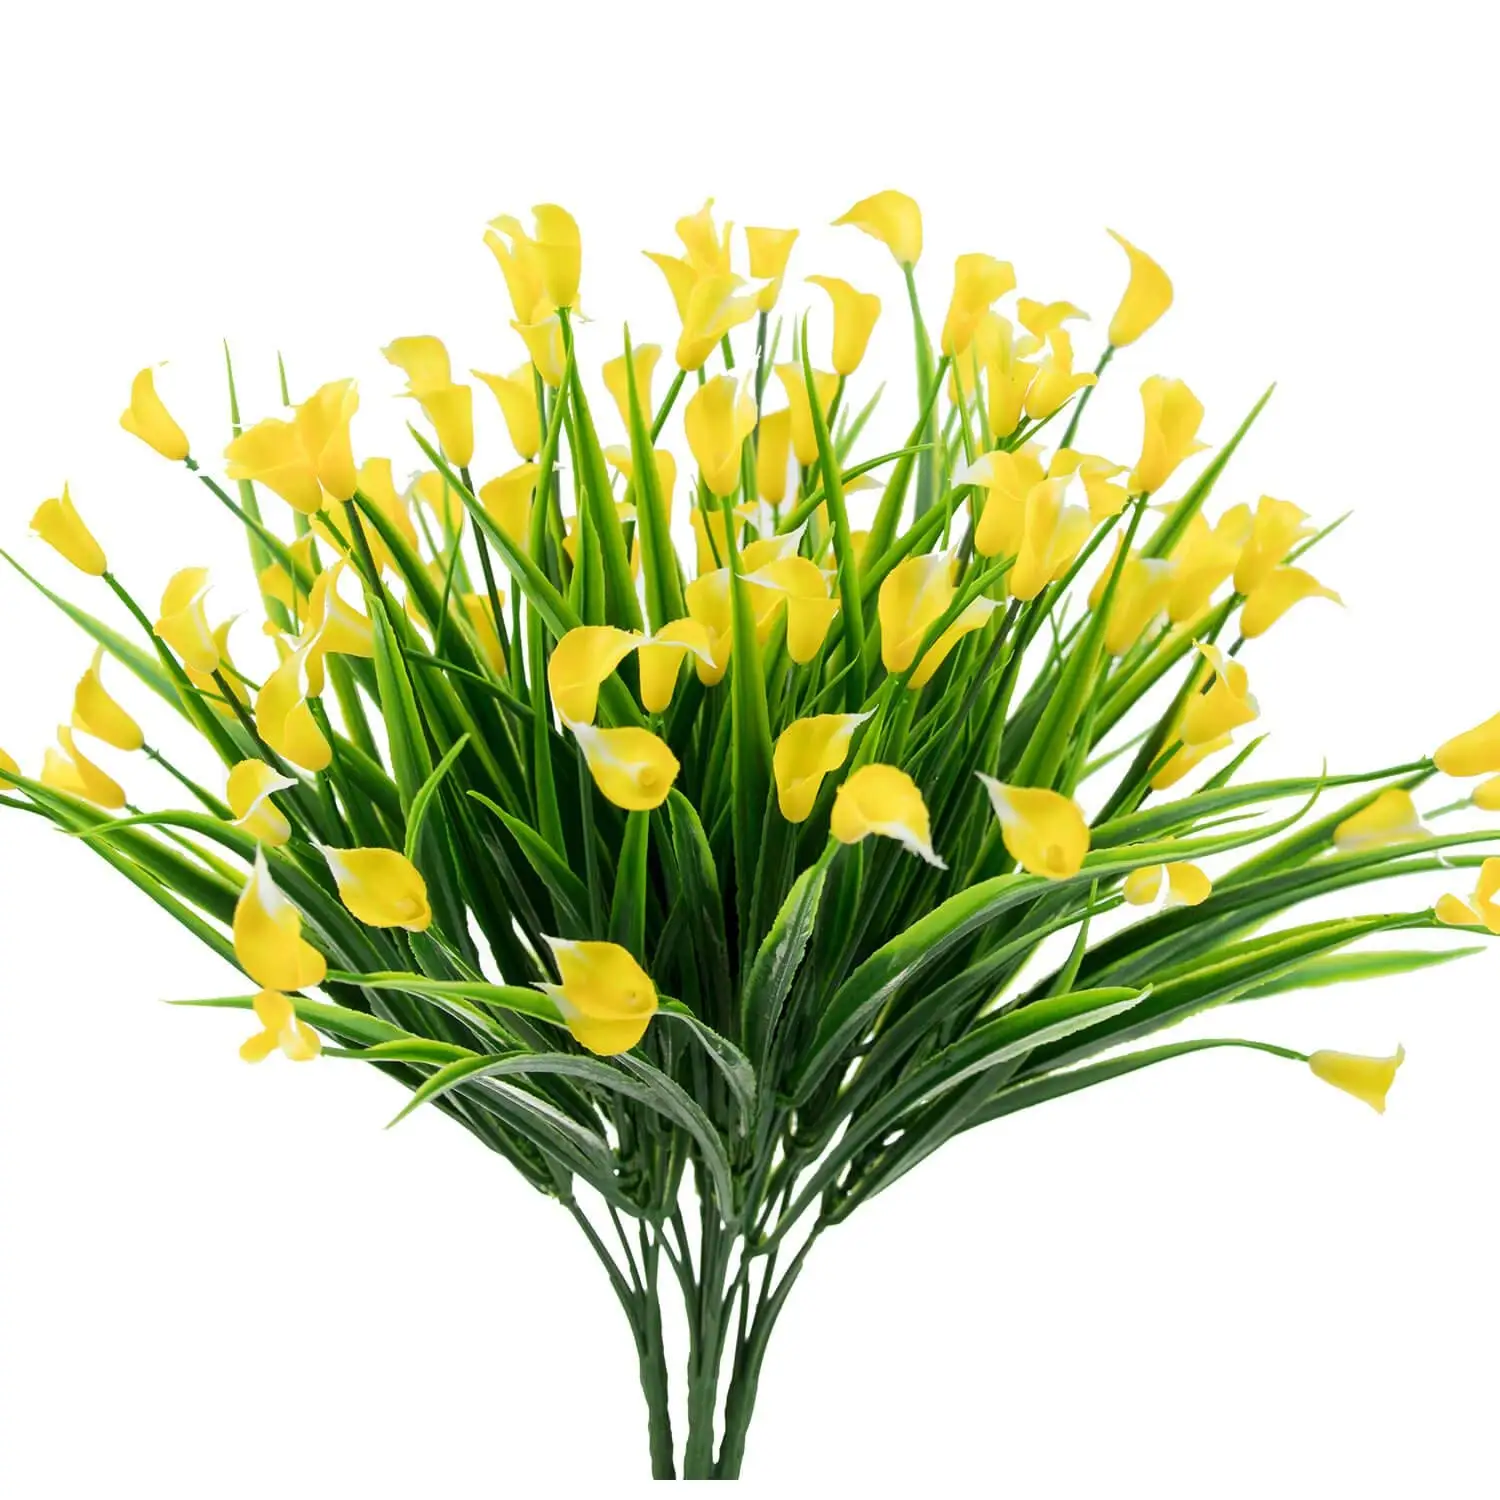 

Искусственные цветы, 4 шт., желтая Калла, лилия, искусственные растения, искусственные кустарники, пластиковый декор для зелени